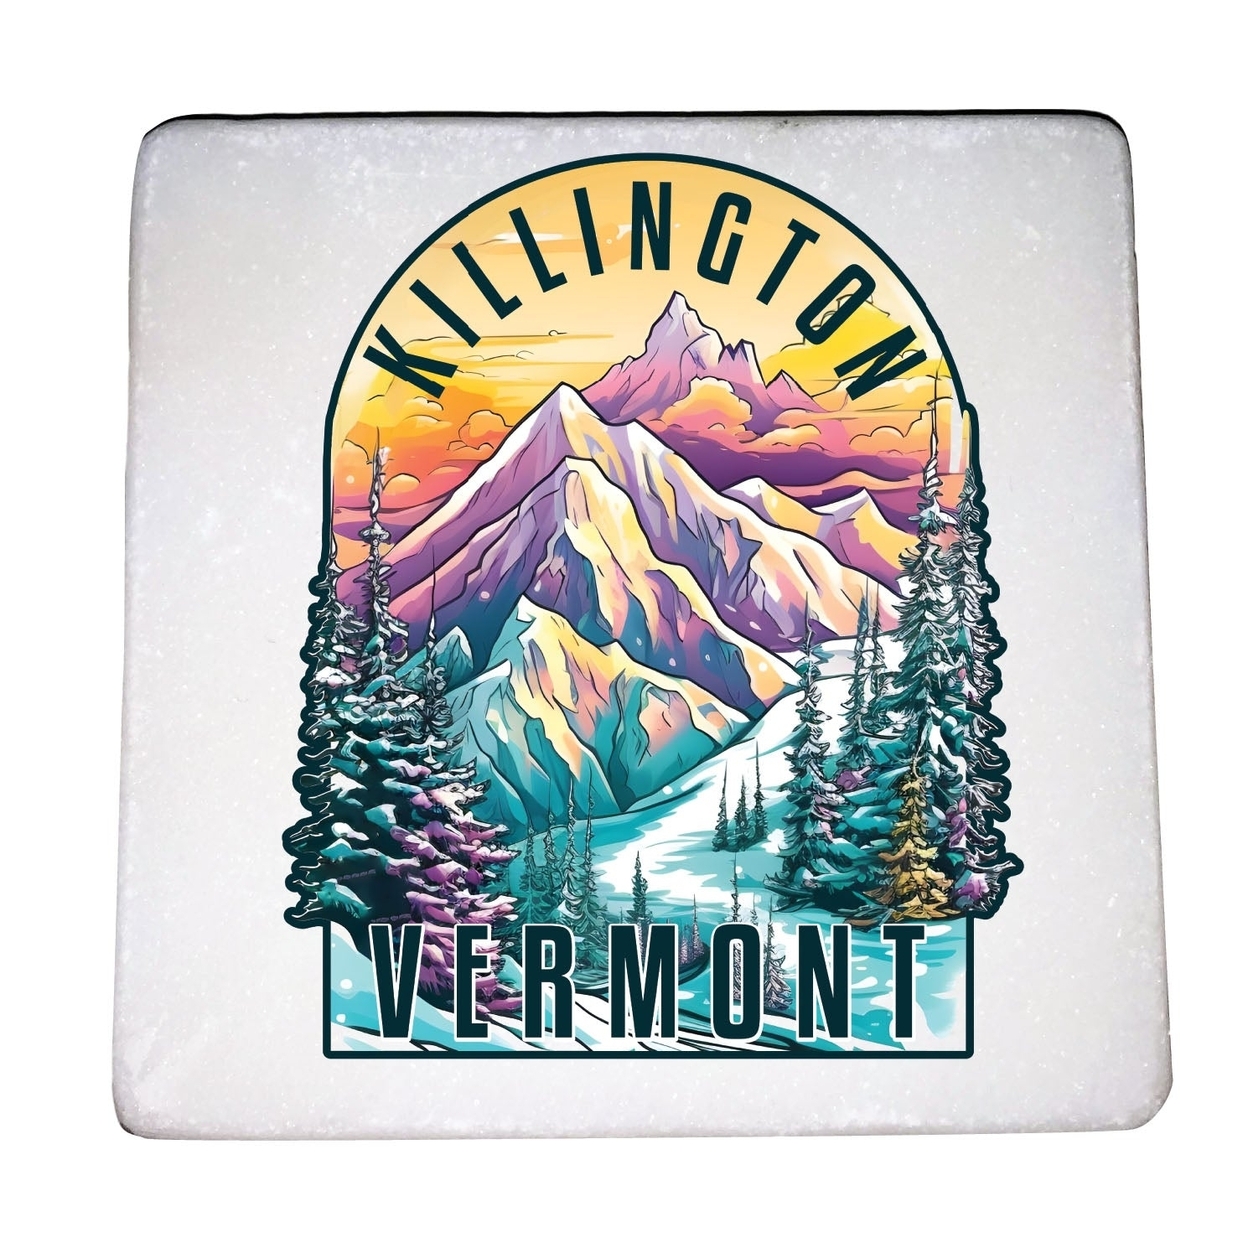 Killington Vermont Design B Souvenir 4x4-Inch Coaster Marble 4 Pack